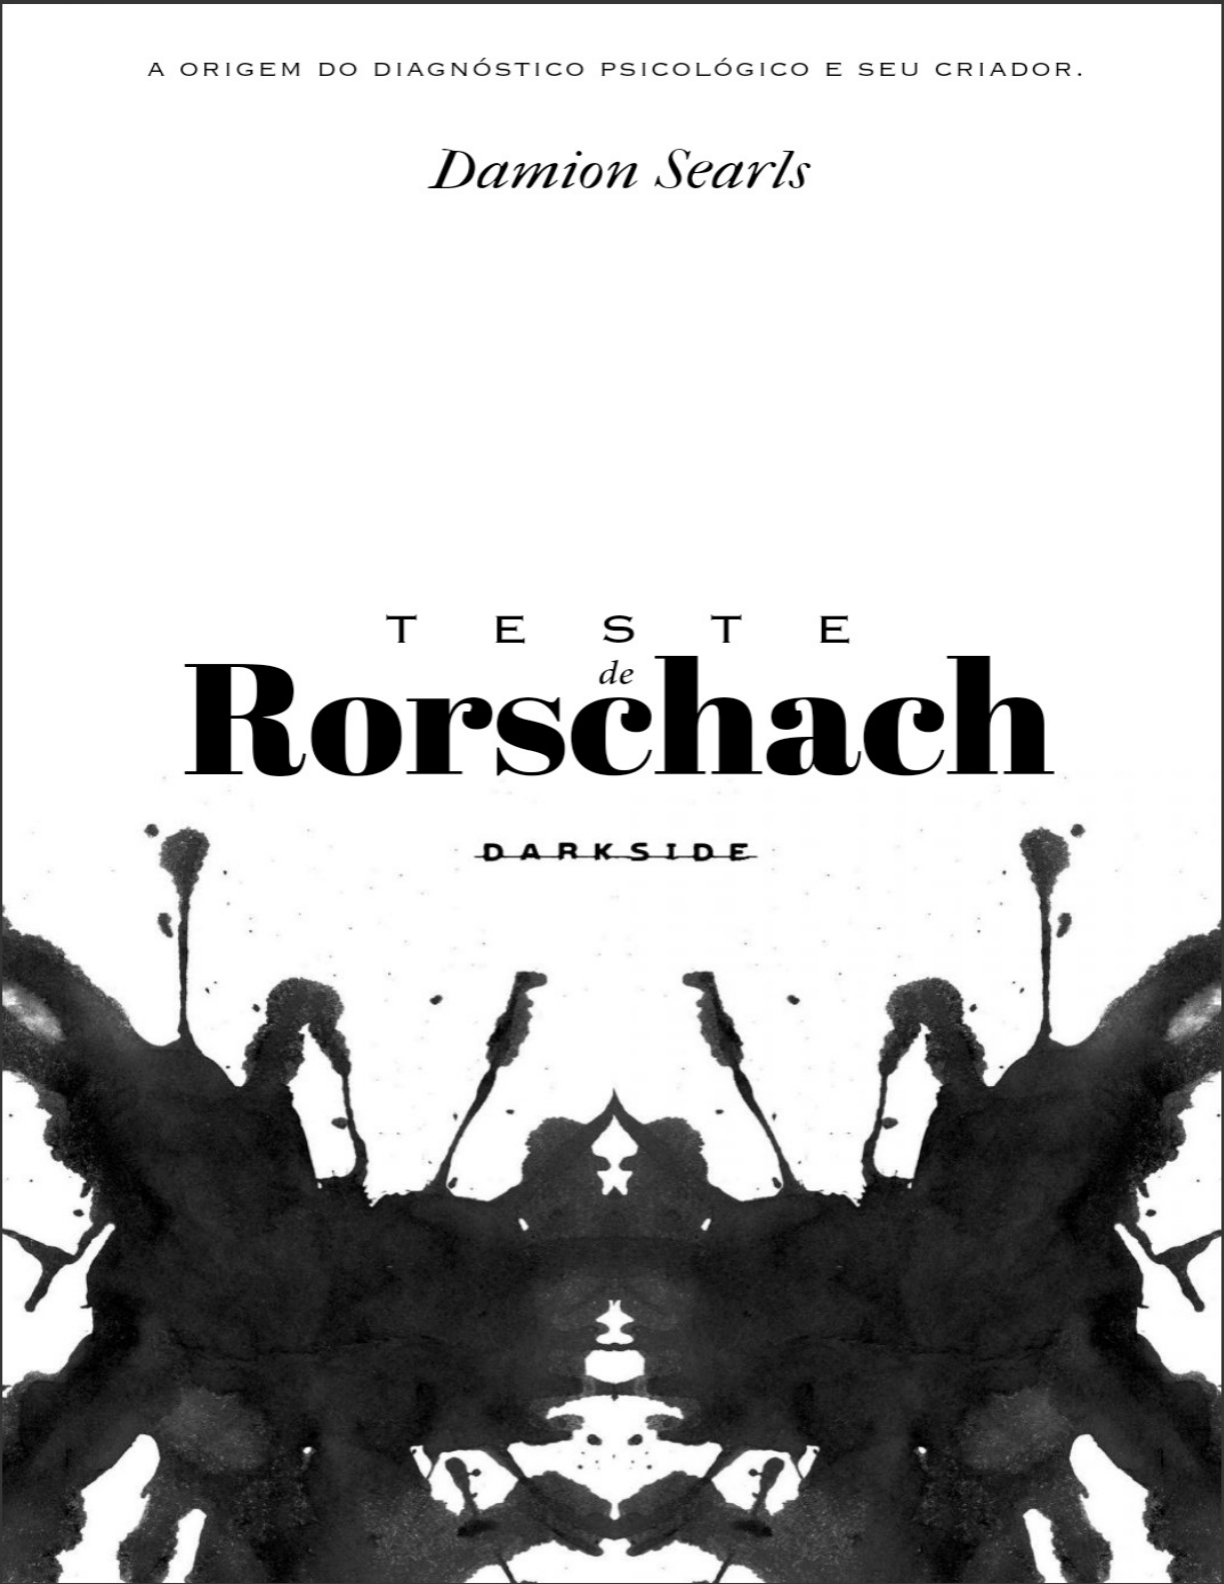 Rorschach e Teste Z: como avaliar a personalidade com testes de manchas -  Grupo Educativa